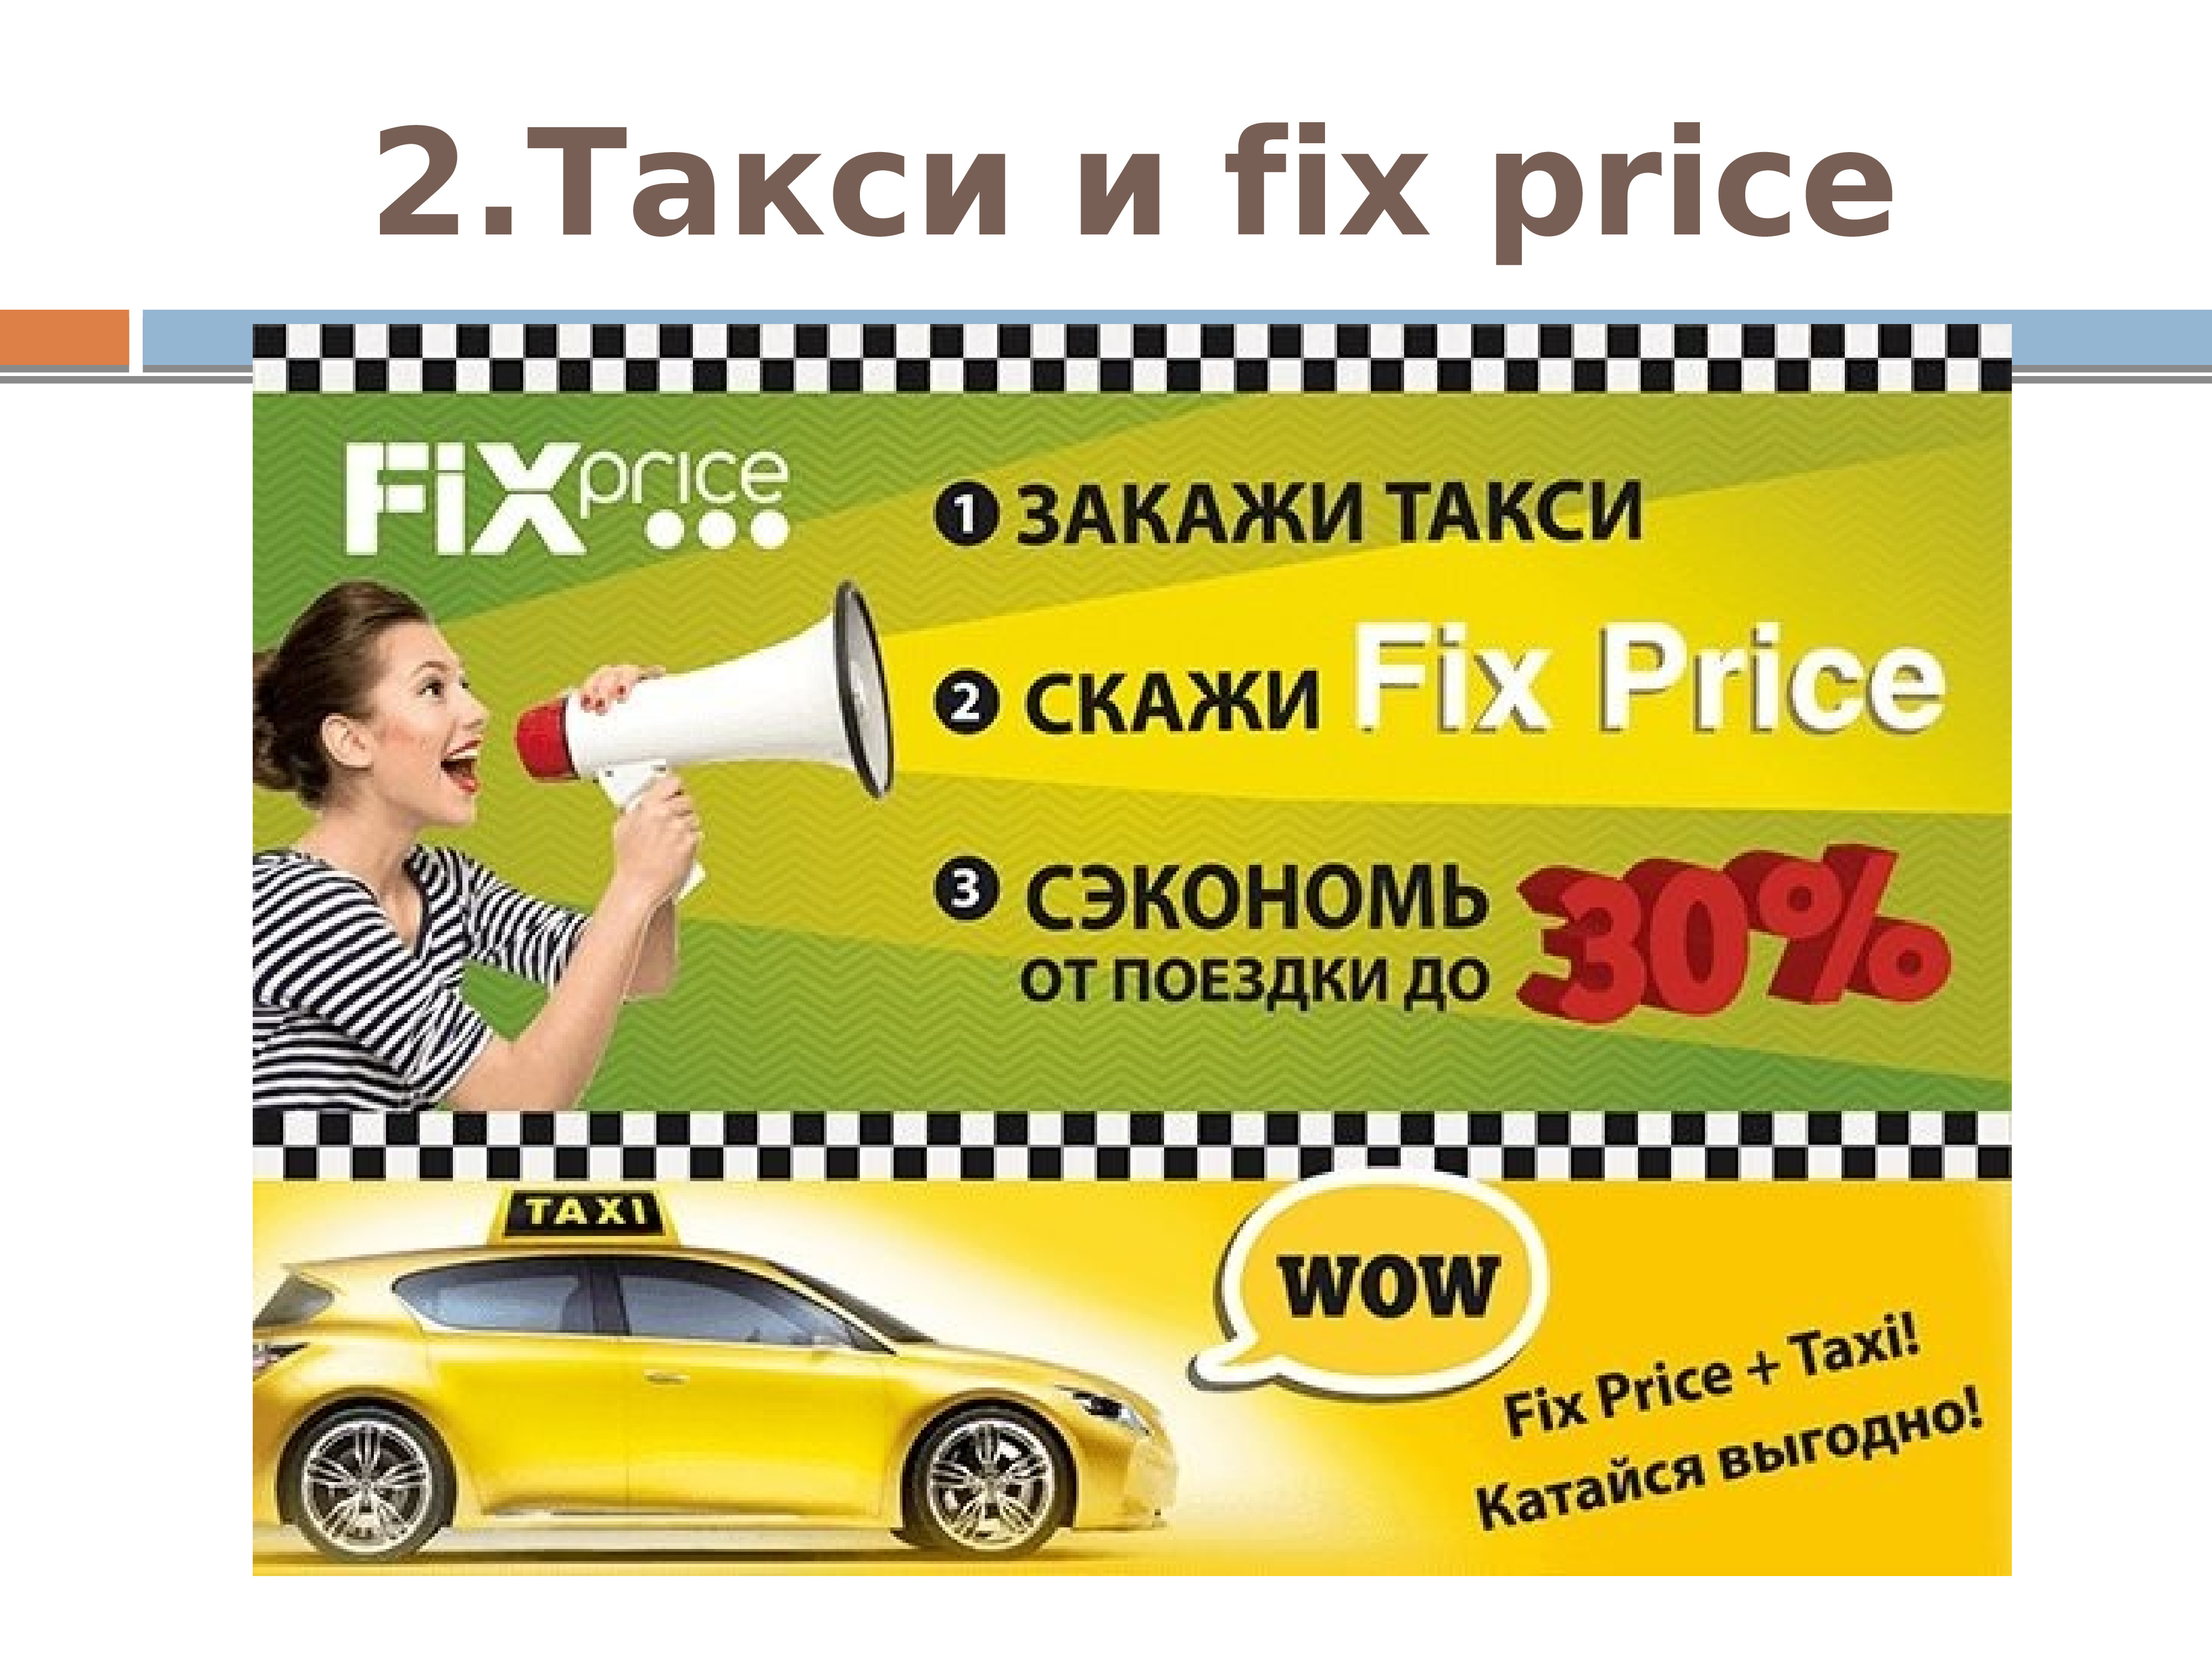 Номер такси сказать. Реклама такси. Закажи такси. Акции для таксистов. Баннер такси.